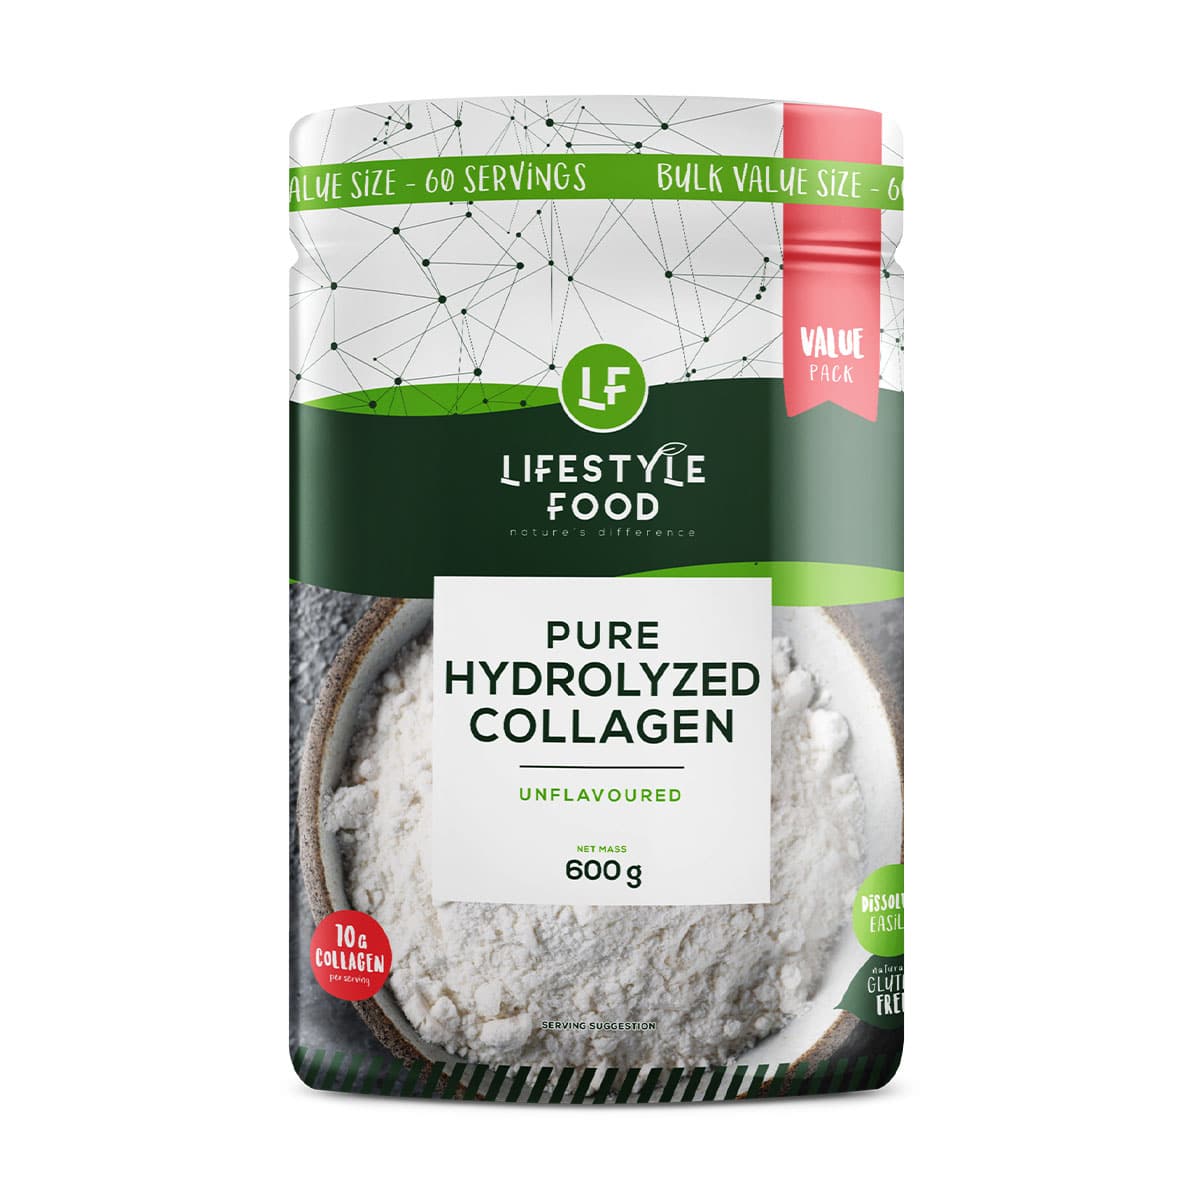 Lifestyle Food Pure Hydrolyzed Collagen Powder Bulk Value - 600g